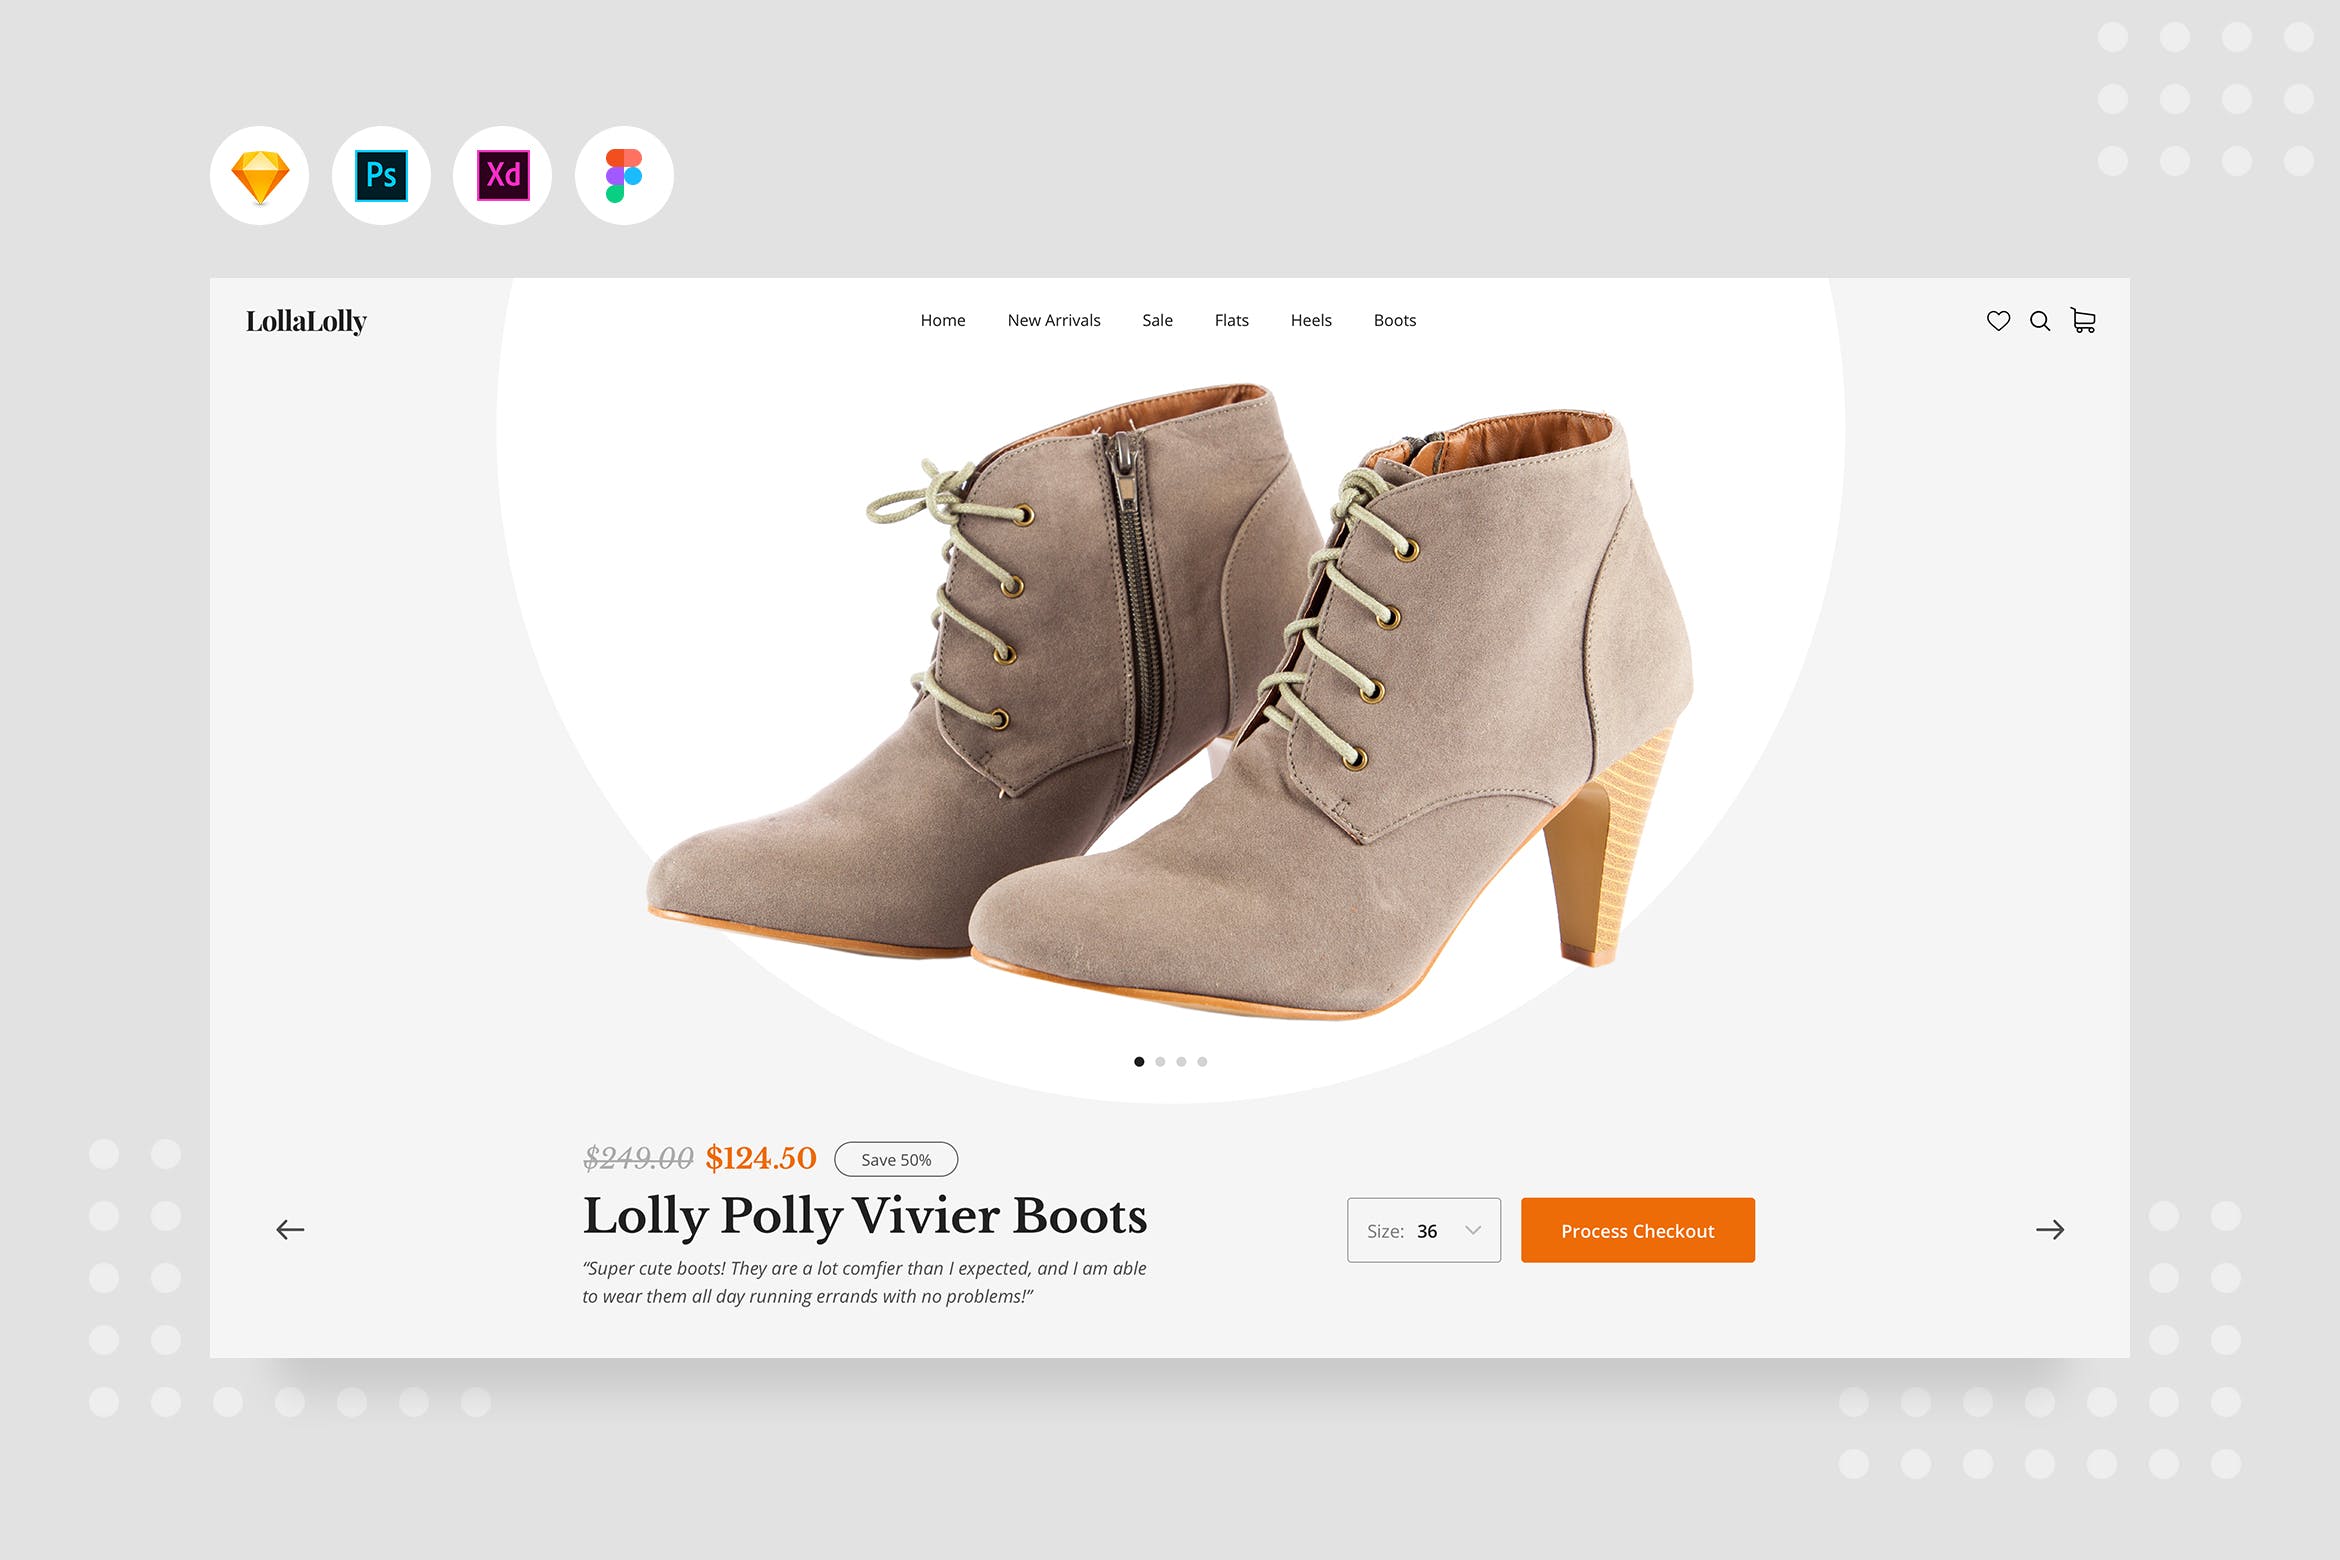 女靴产品/商品详情页界面设计素材中国精选模板 DailyUI.V16 – Female Boots Product Detail插图